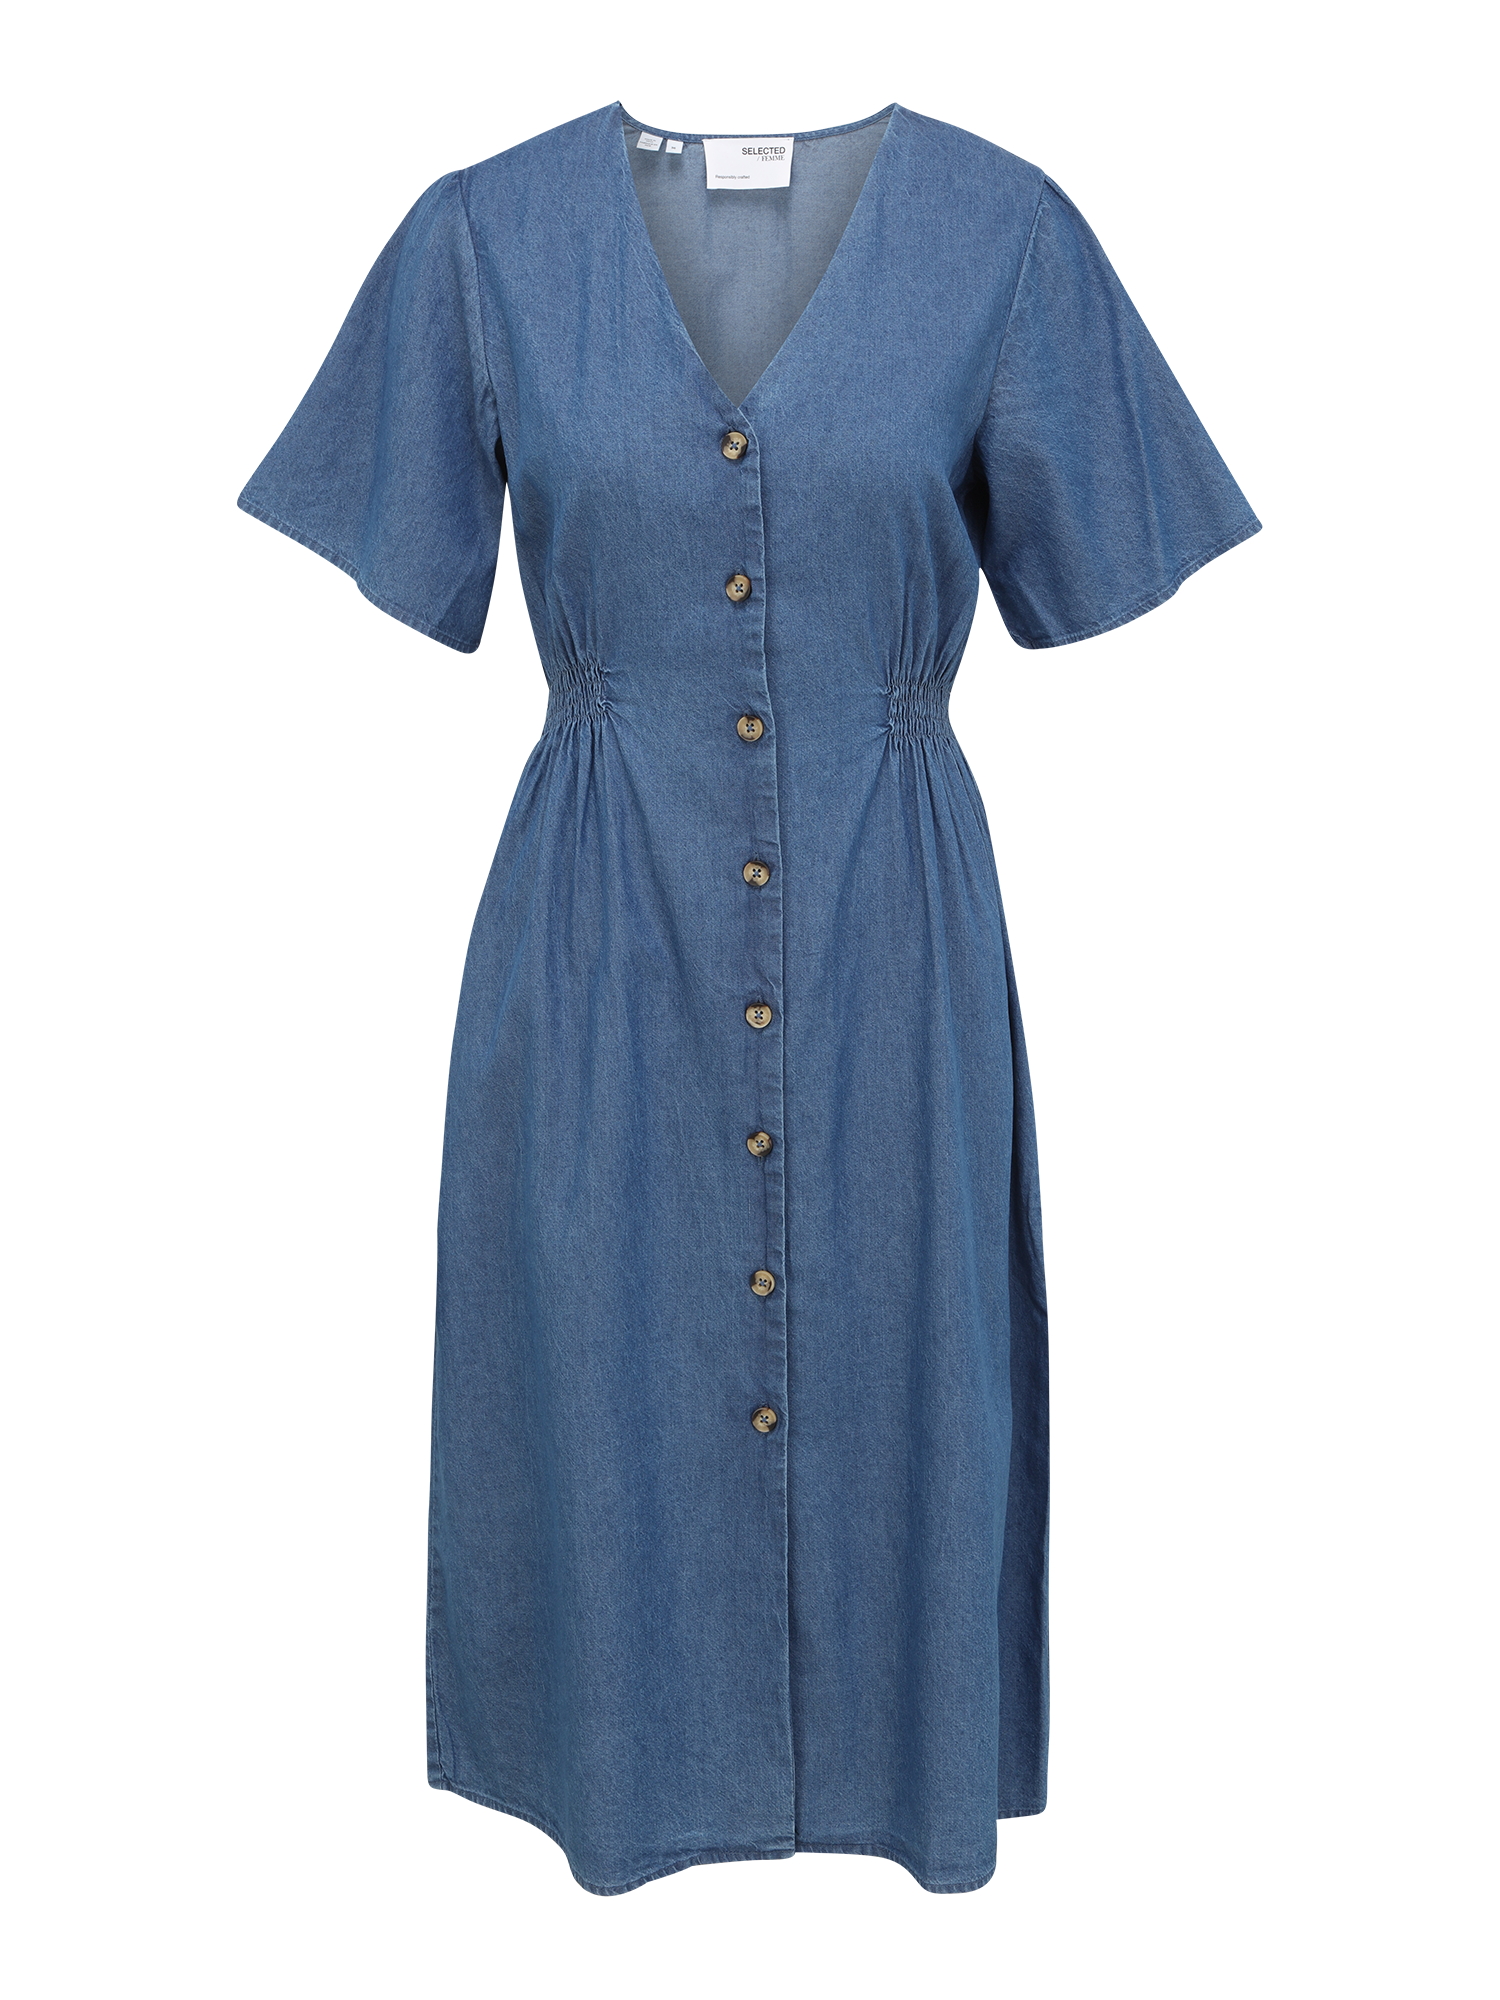 Odzież Kobiety Selected Femme Petite Sukienka koszulowa SLFCLARISA w kolorze Błękitnym 